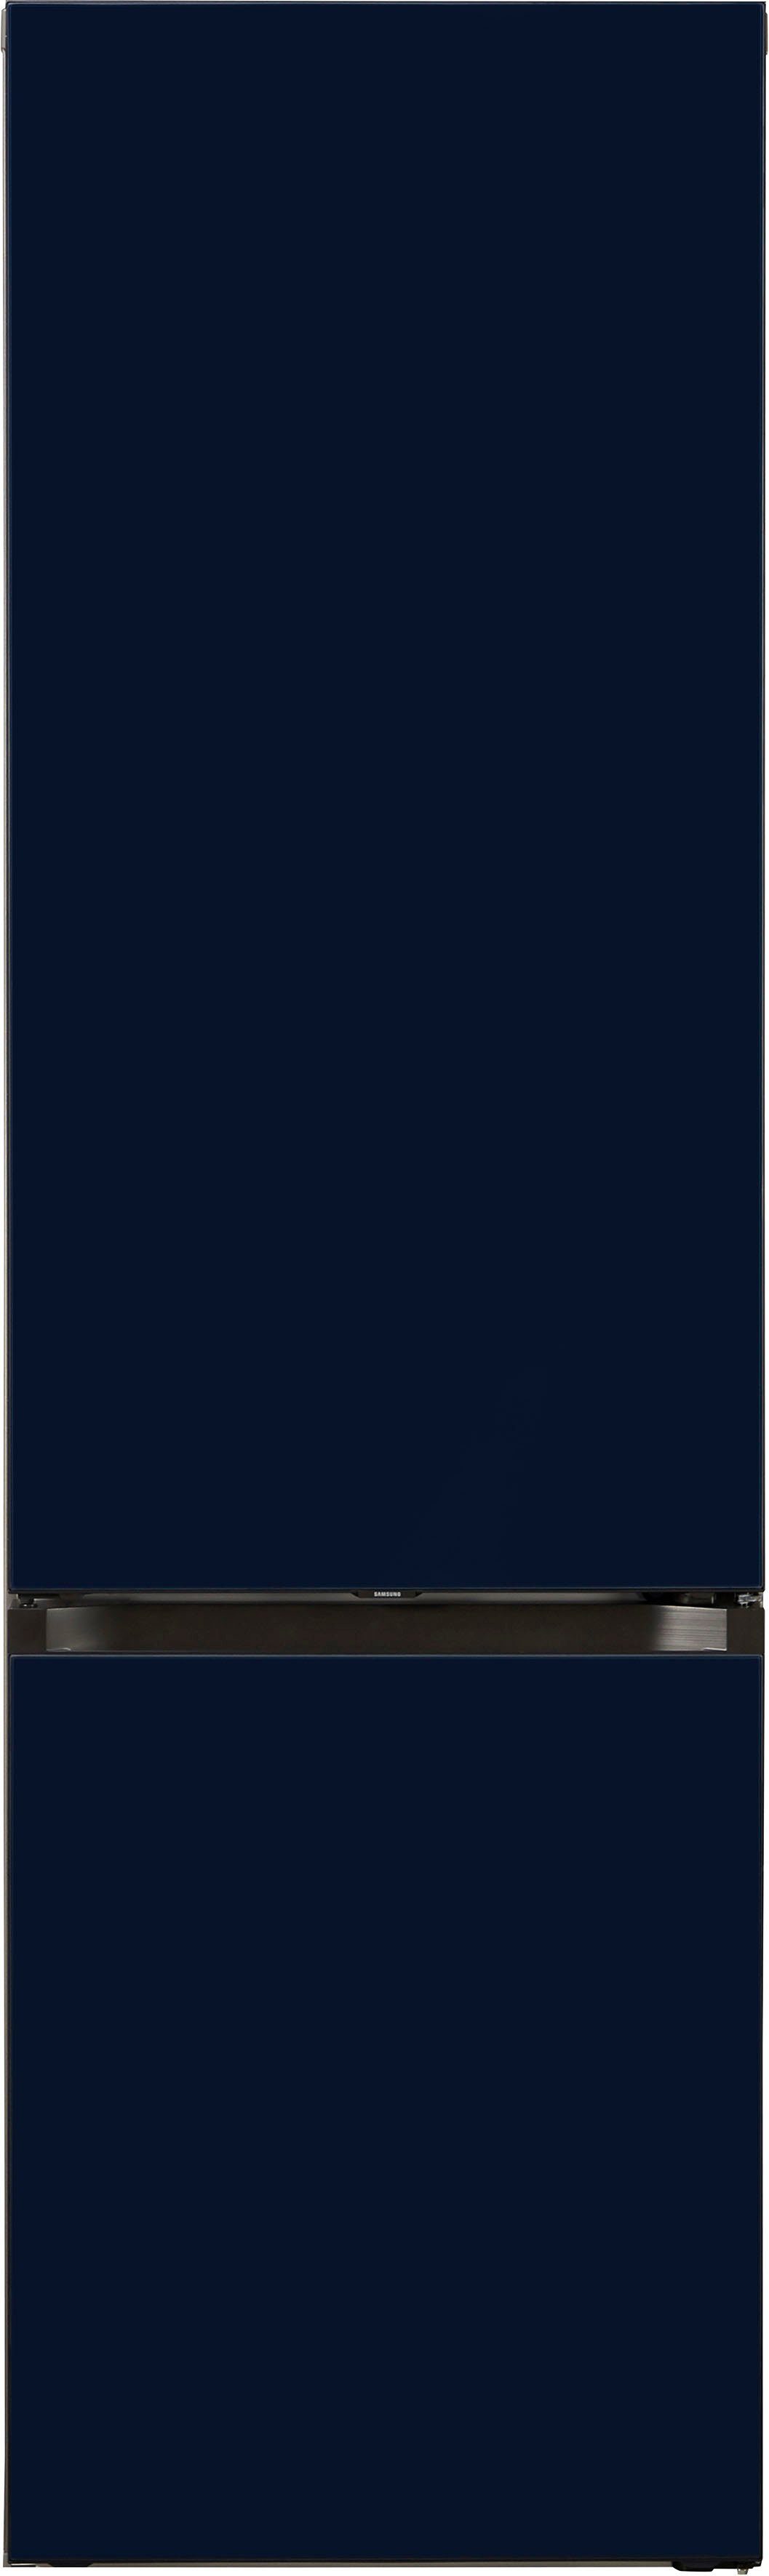 Samsung hoch, cm RL38A6B6C41, 203 cm breit 59,5 Bespoke Kühl-/Gefrierkombination